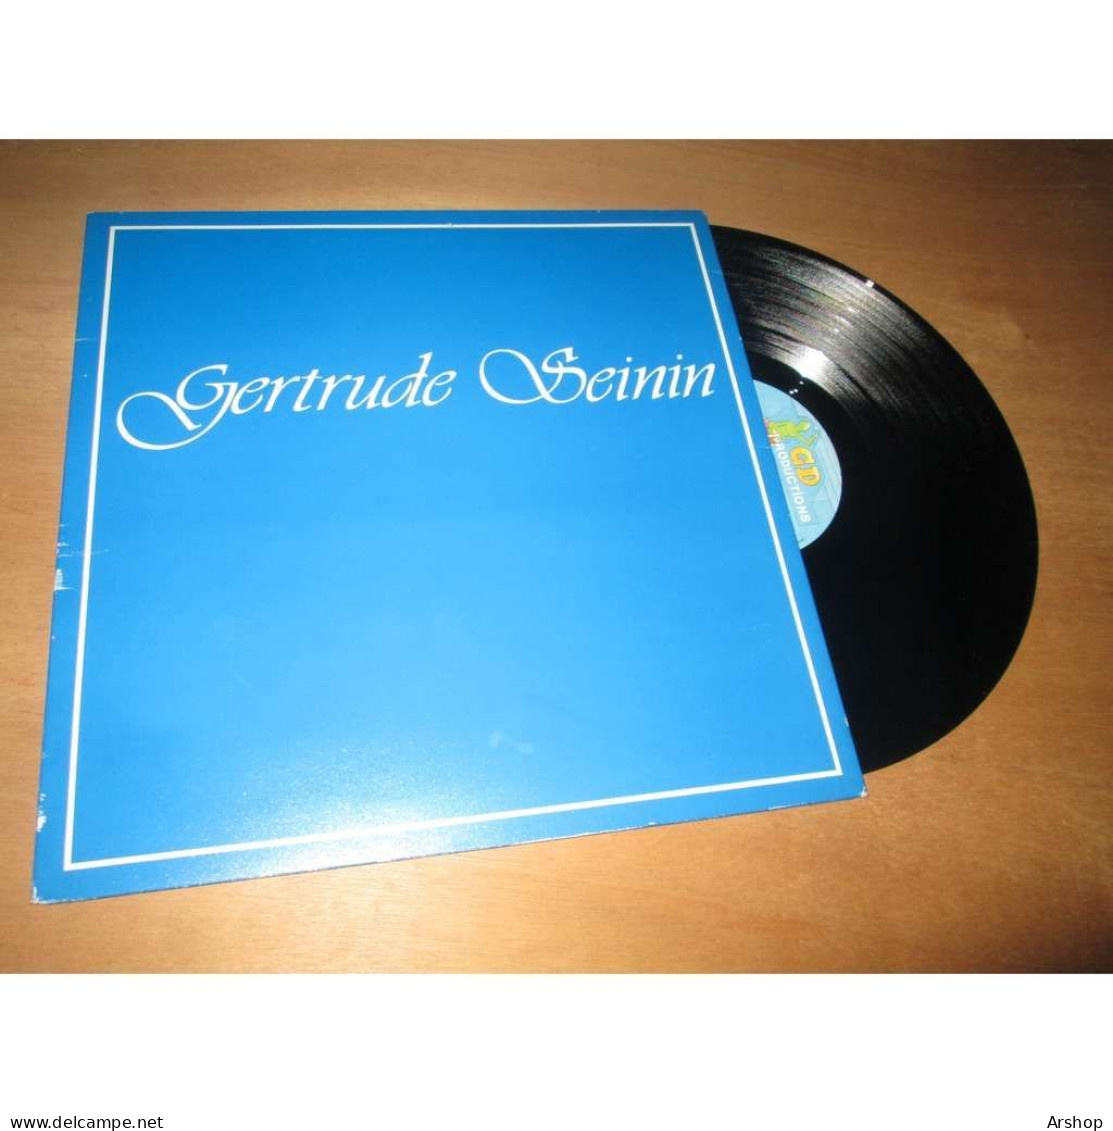 GERTRUDE SEININ Album Eponyme MARTINIQUE / MUSIQUE ANTILLAISE - GD Productions GD 032 Lp 1985 - World Music